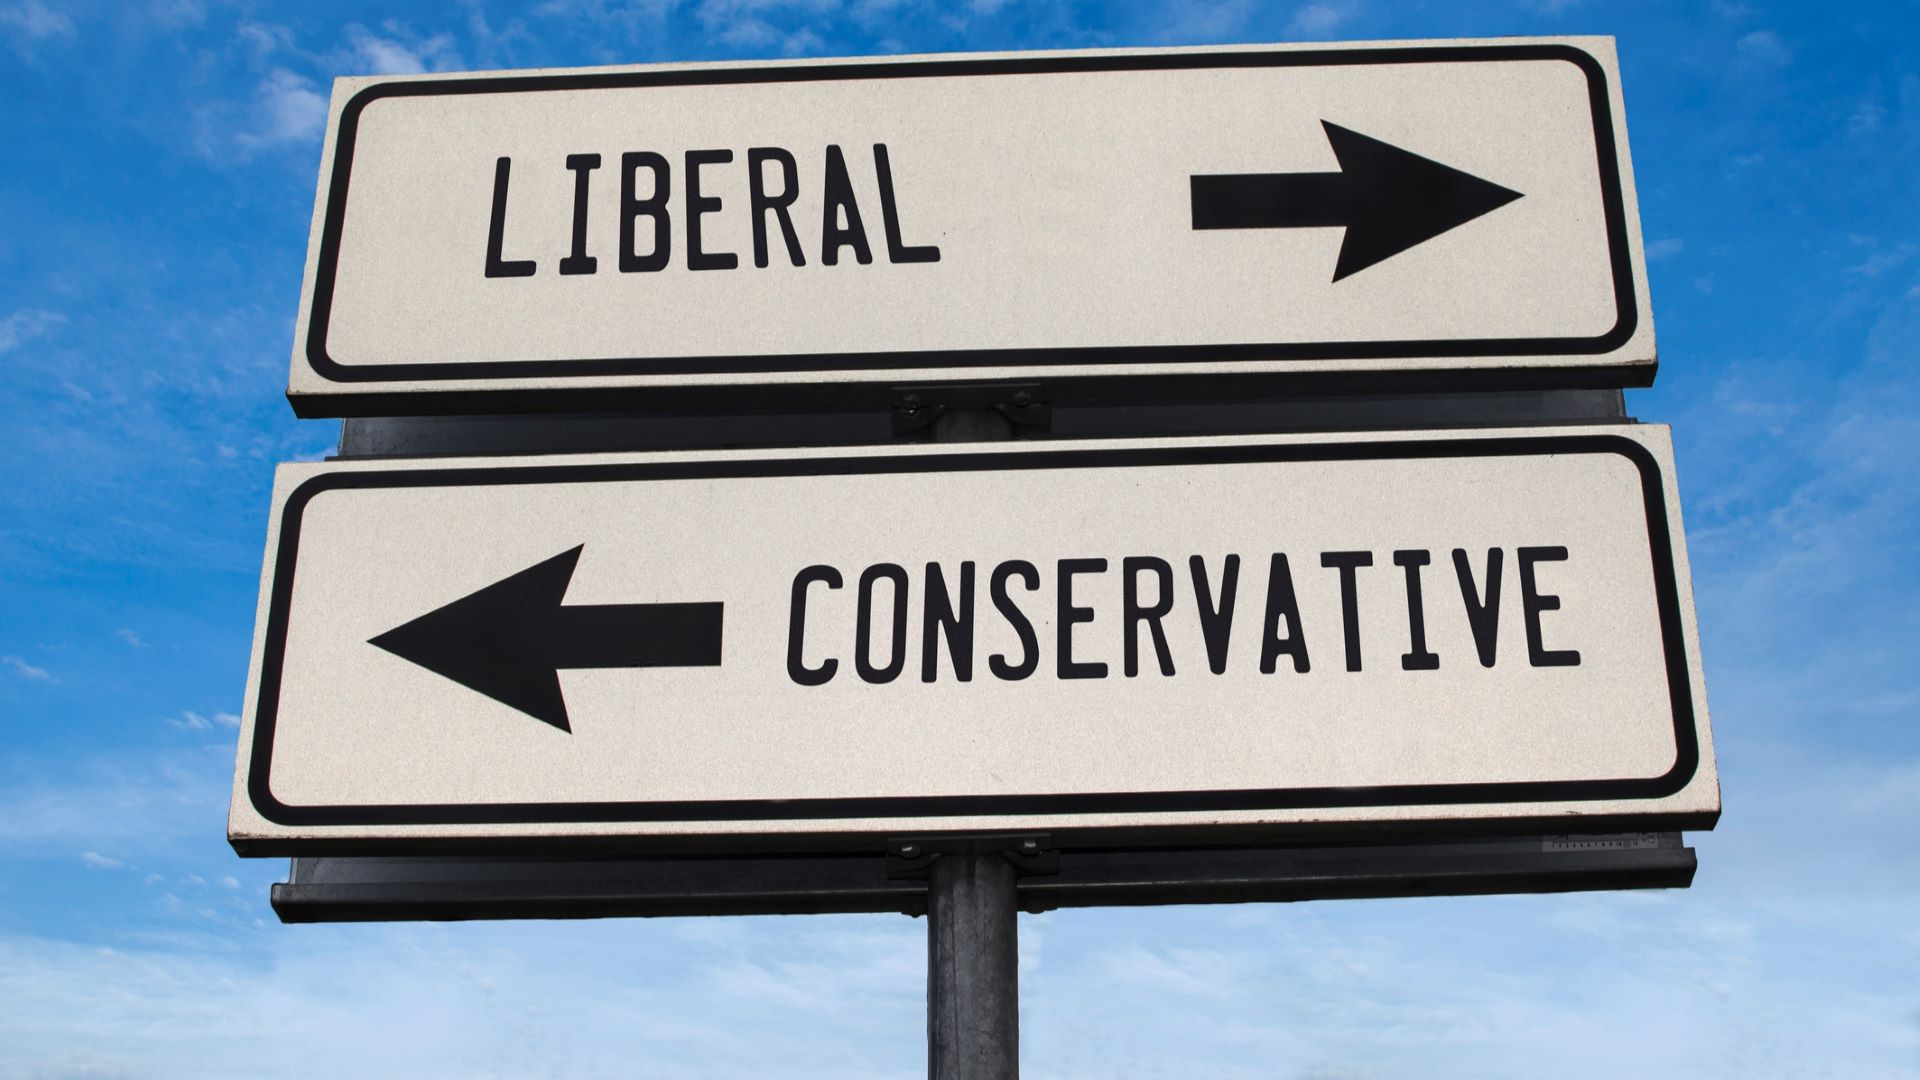 political spectrum liberal v conservative